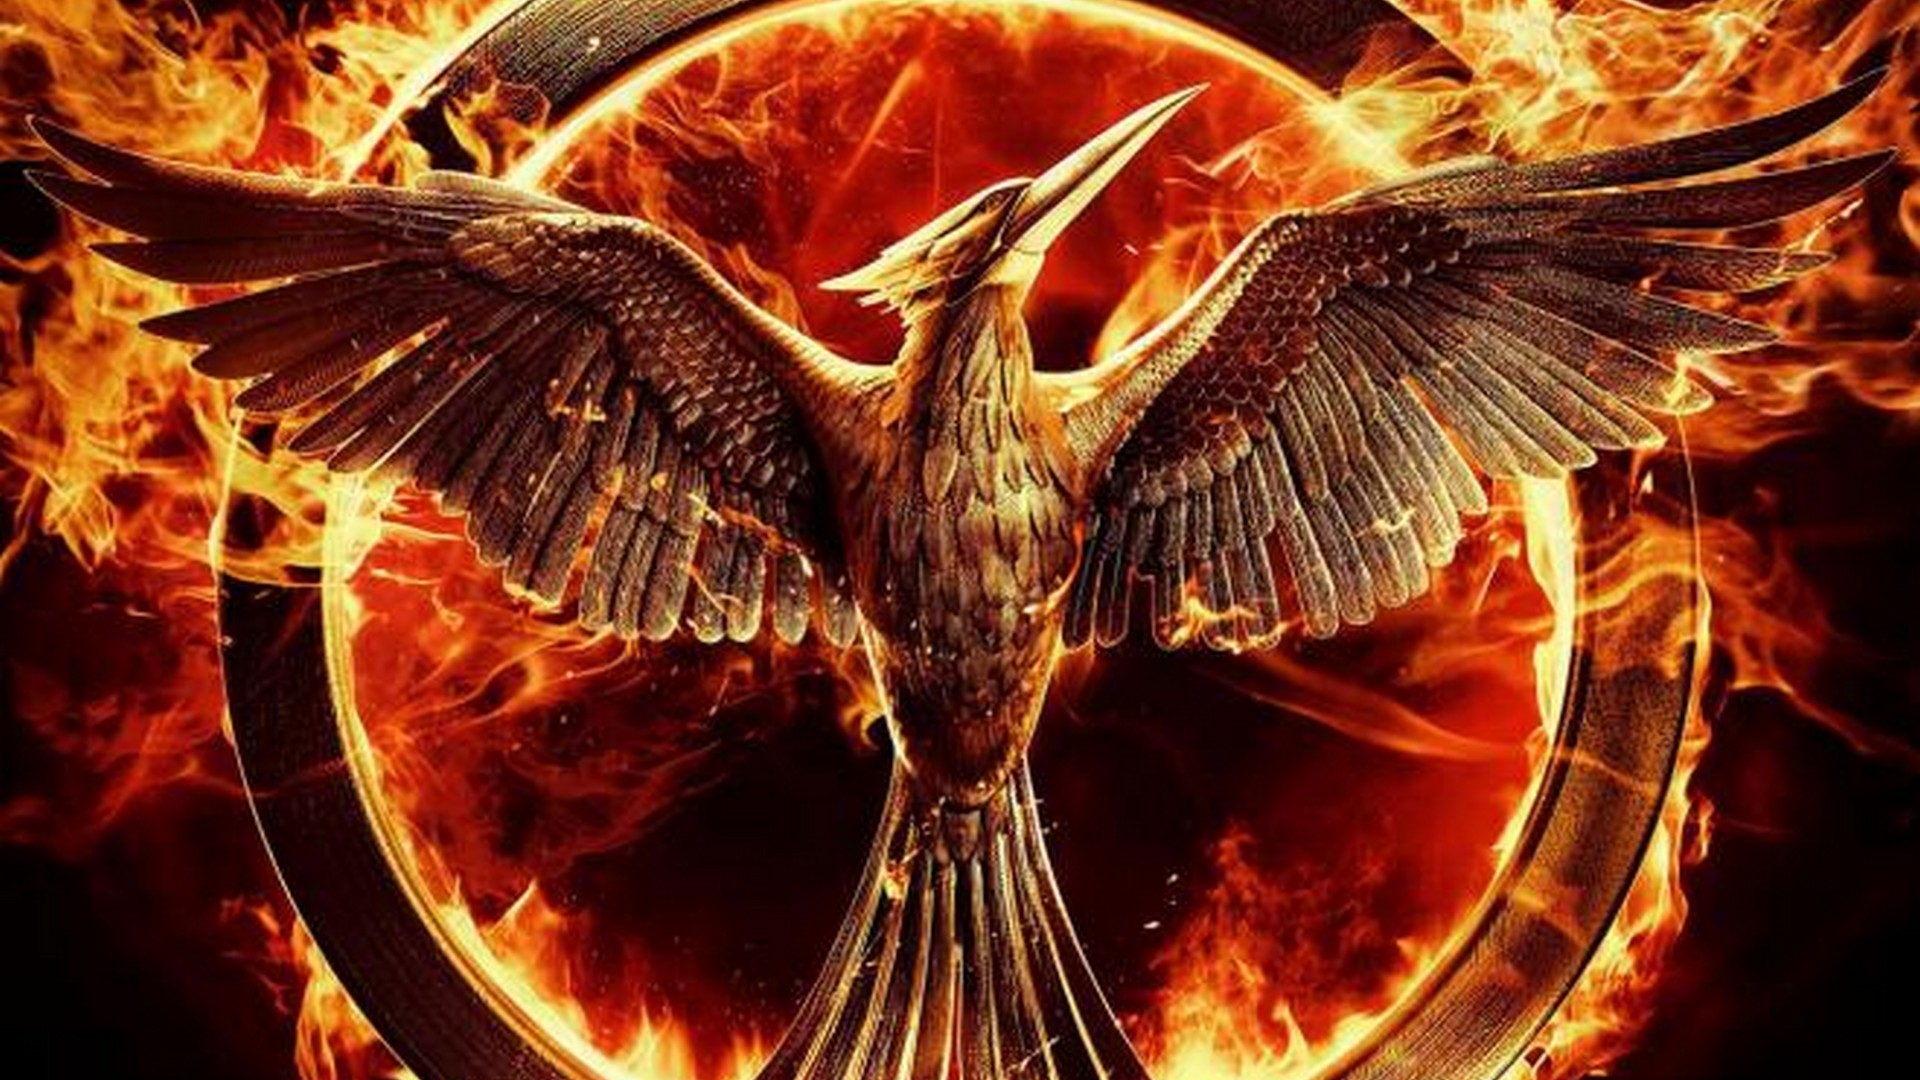 Golden Phoenix - Hunger Games Mockingjay , HD Wallpaper & Backgrounds